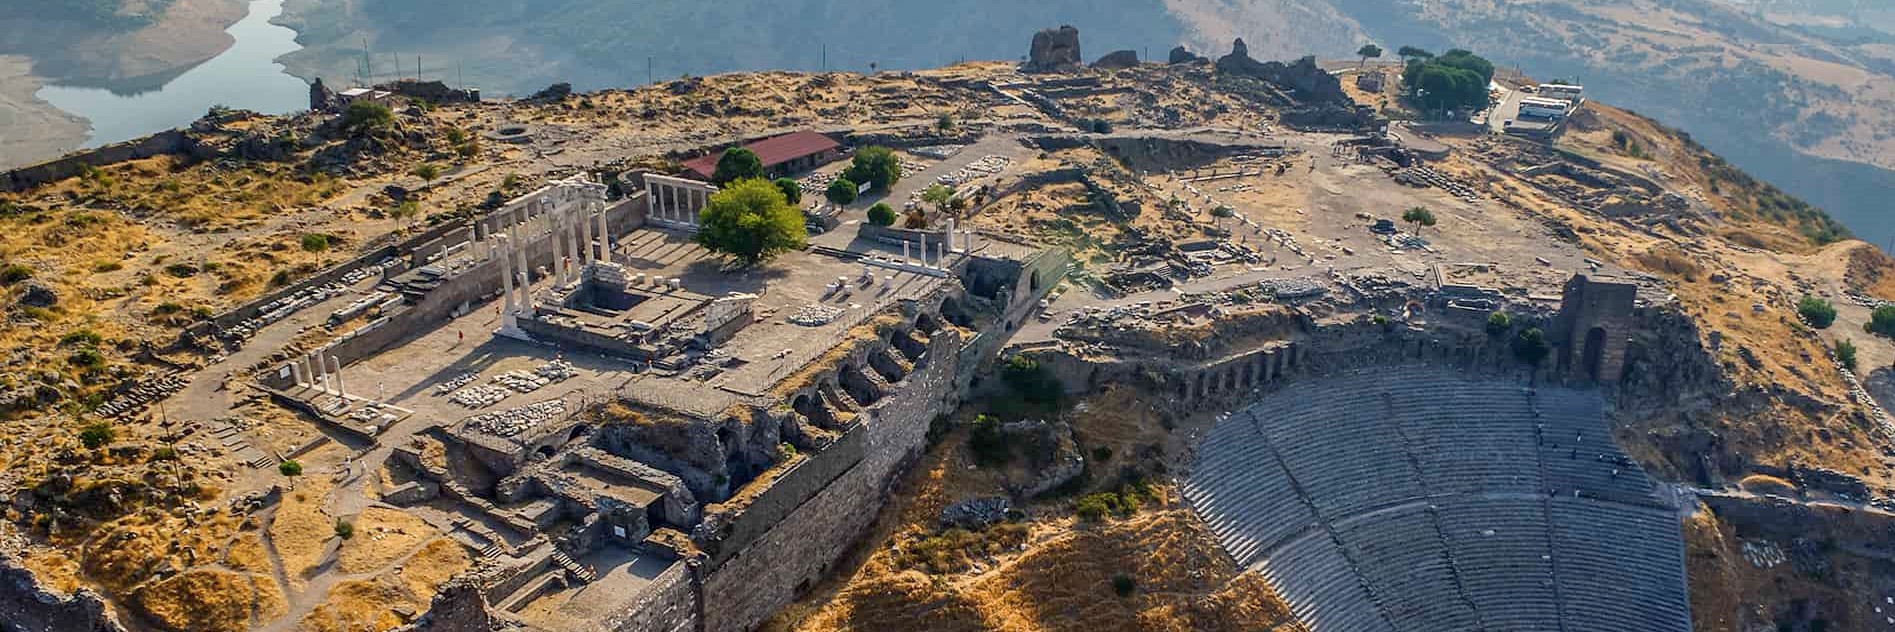 Pergamon Tours in Turkey